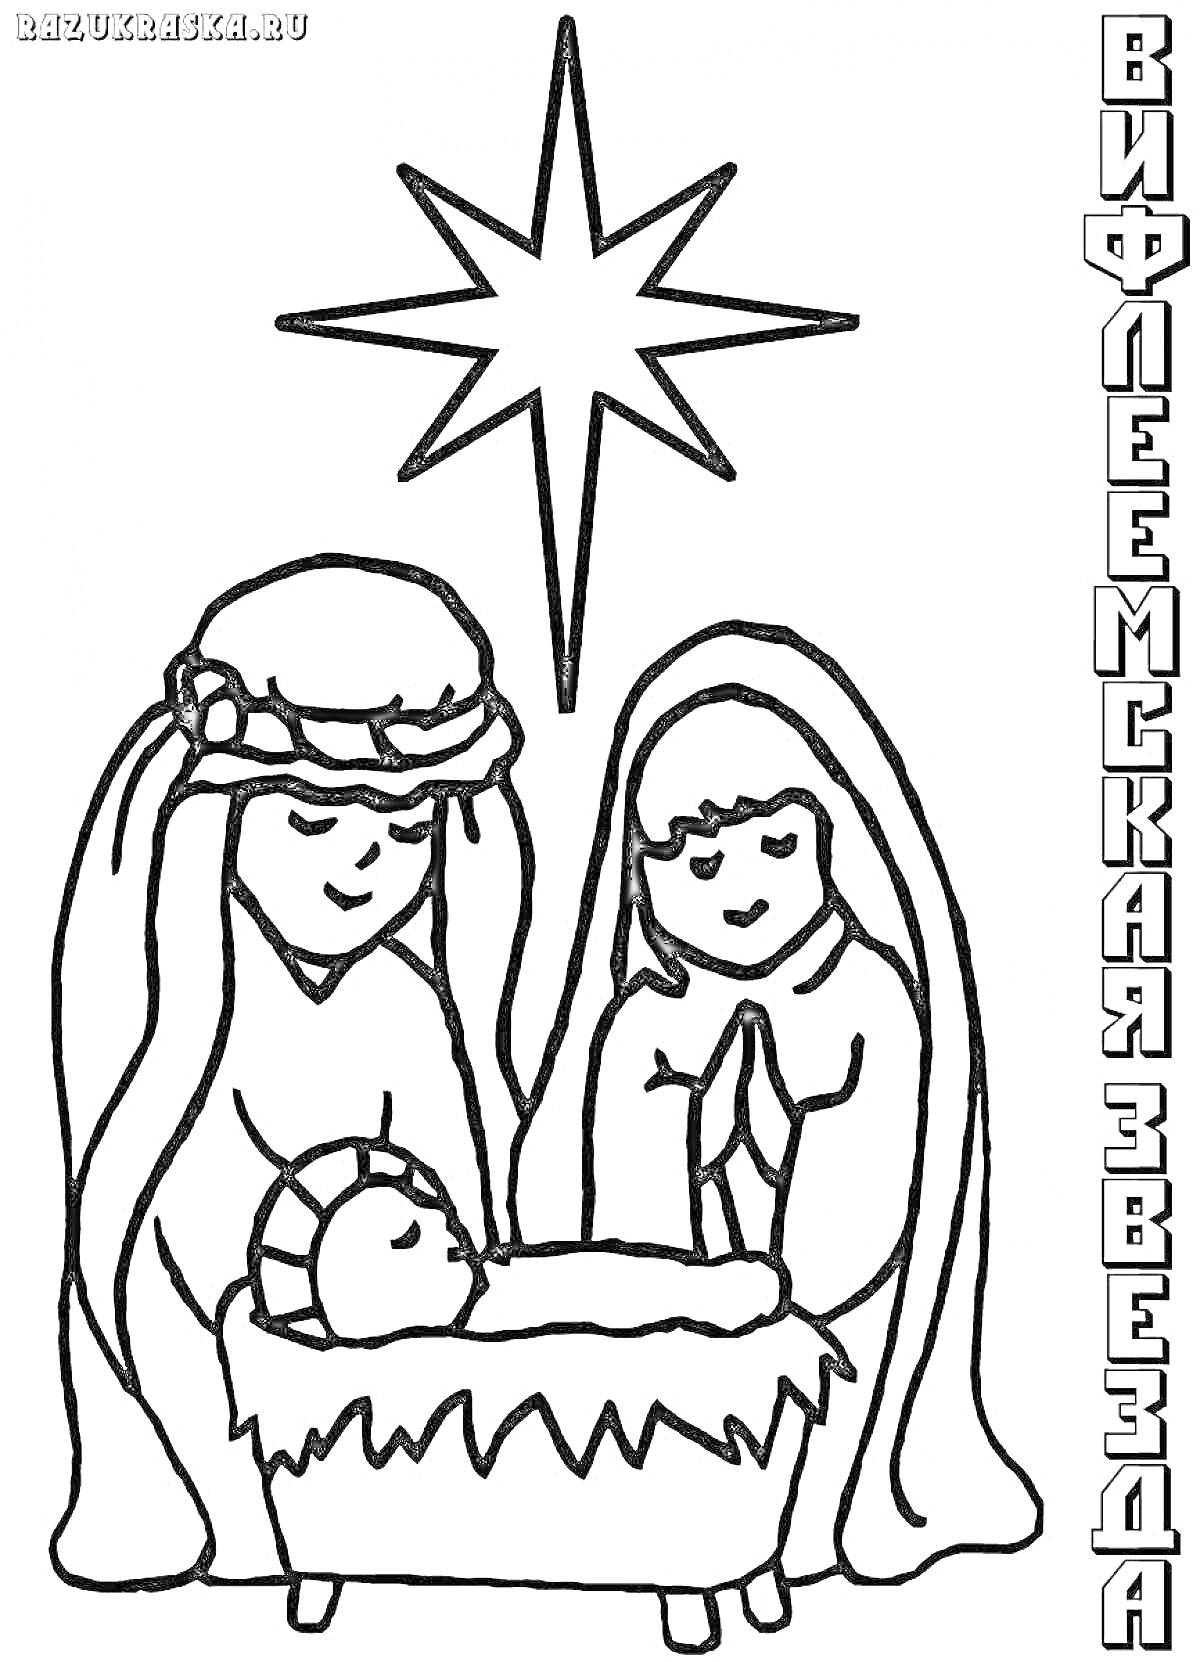 Раскраска Вифлеемская звезда над новорожденным Иисусом в яслях, окруженным Марией и Иосифом